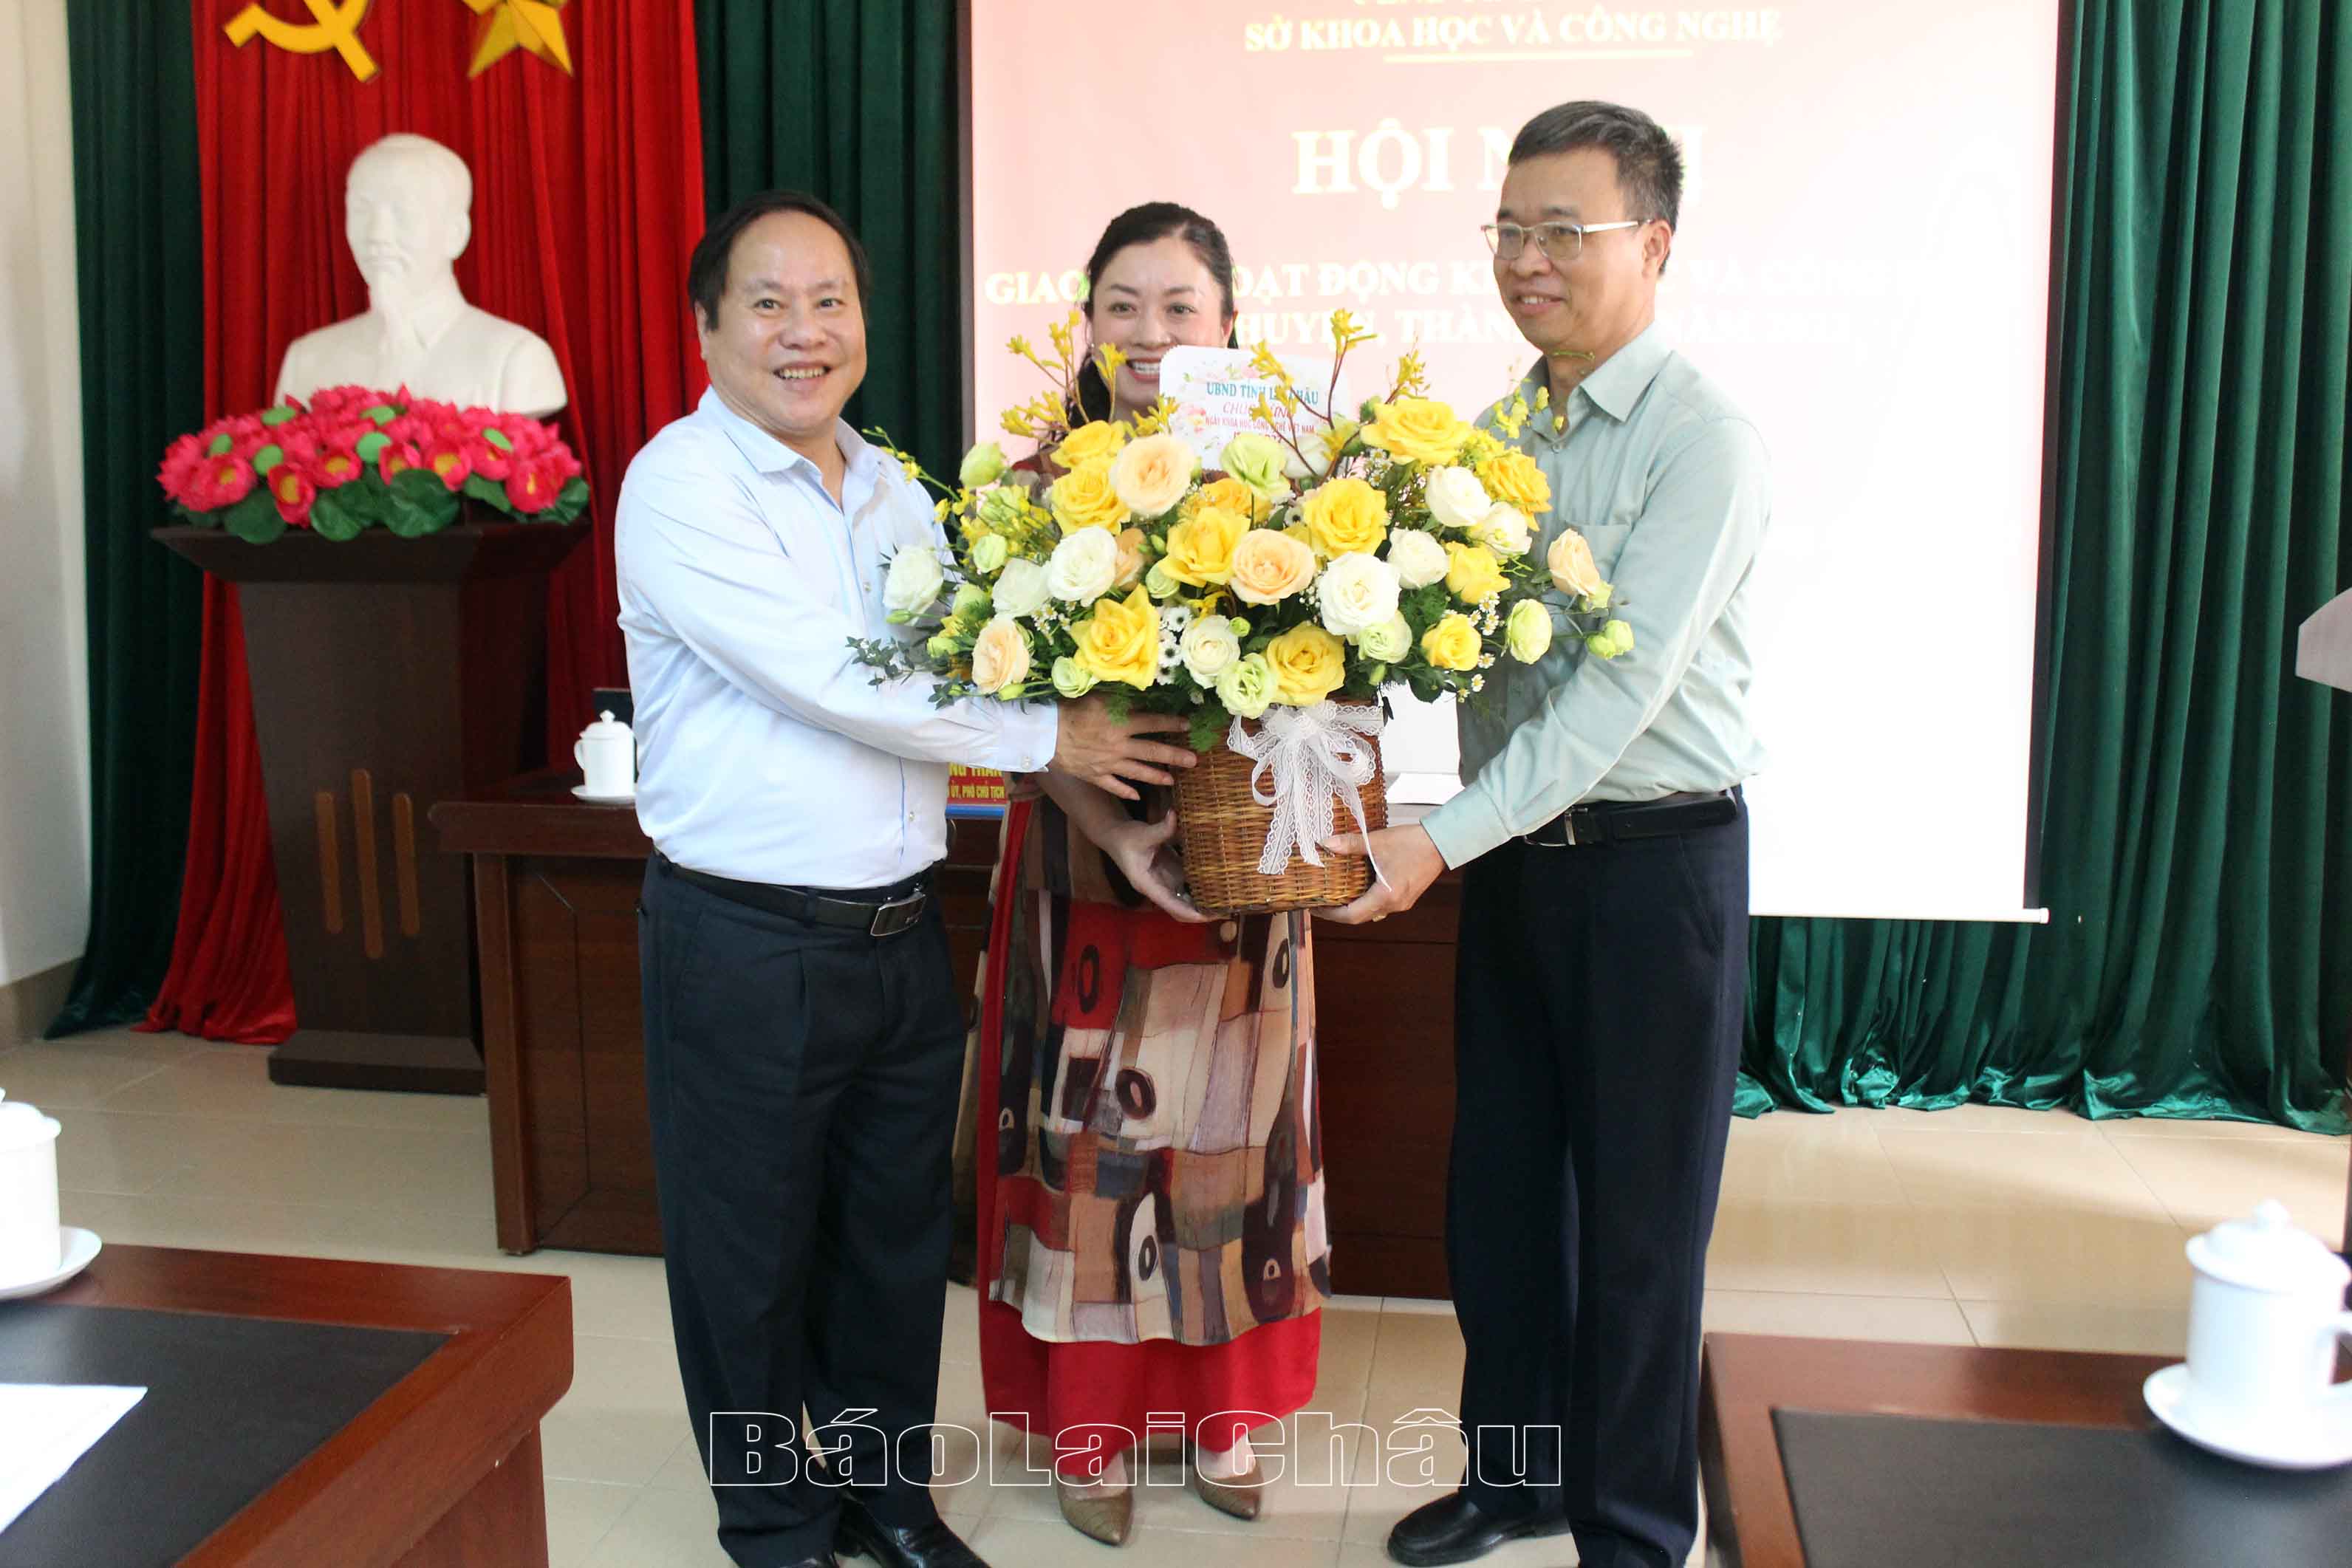 Đồng chí Tống Thanh Hải - Ủy viên Ban Thường vụ Tỉnh ủy, Phó Chủ tịch thường trực UBND tỉnh tặng hoa chúc mừng Sở KH&CN nhân Ngày KH&CN Việt Nam 18/5/2022.